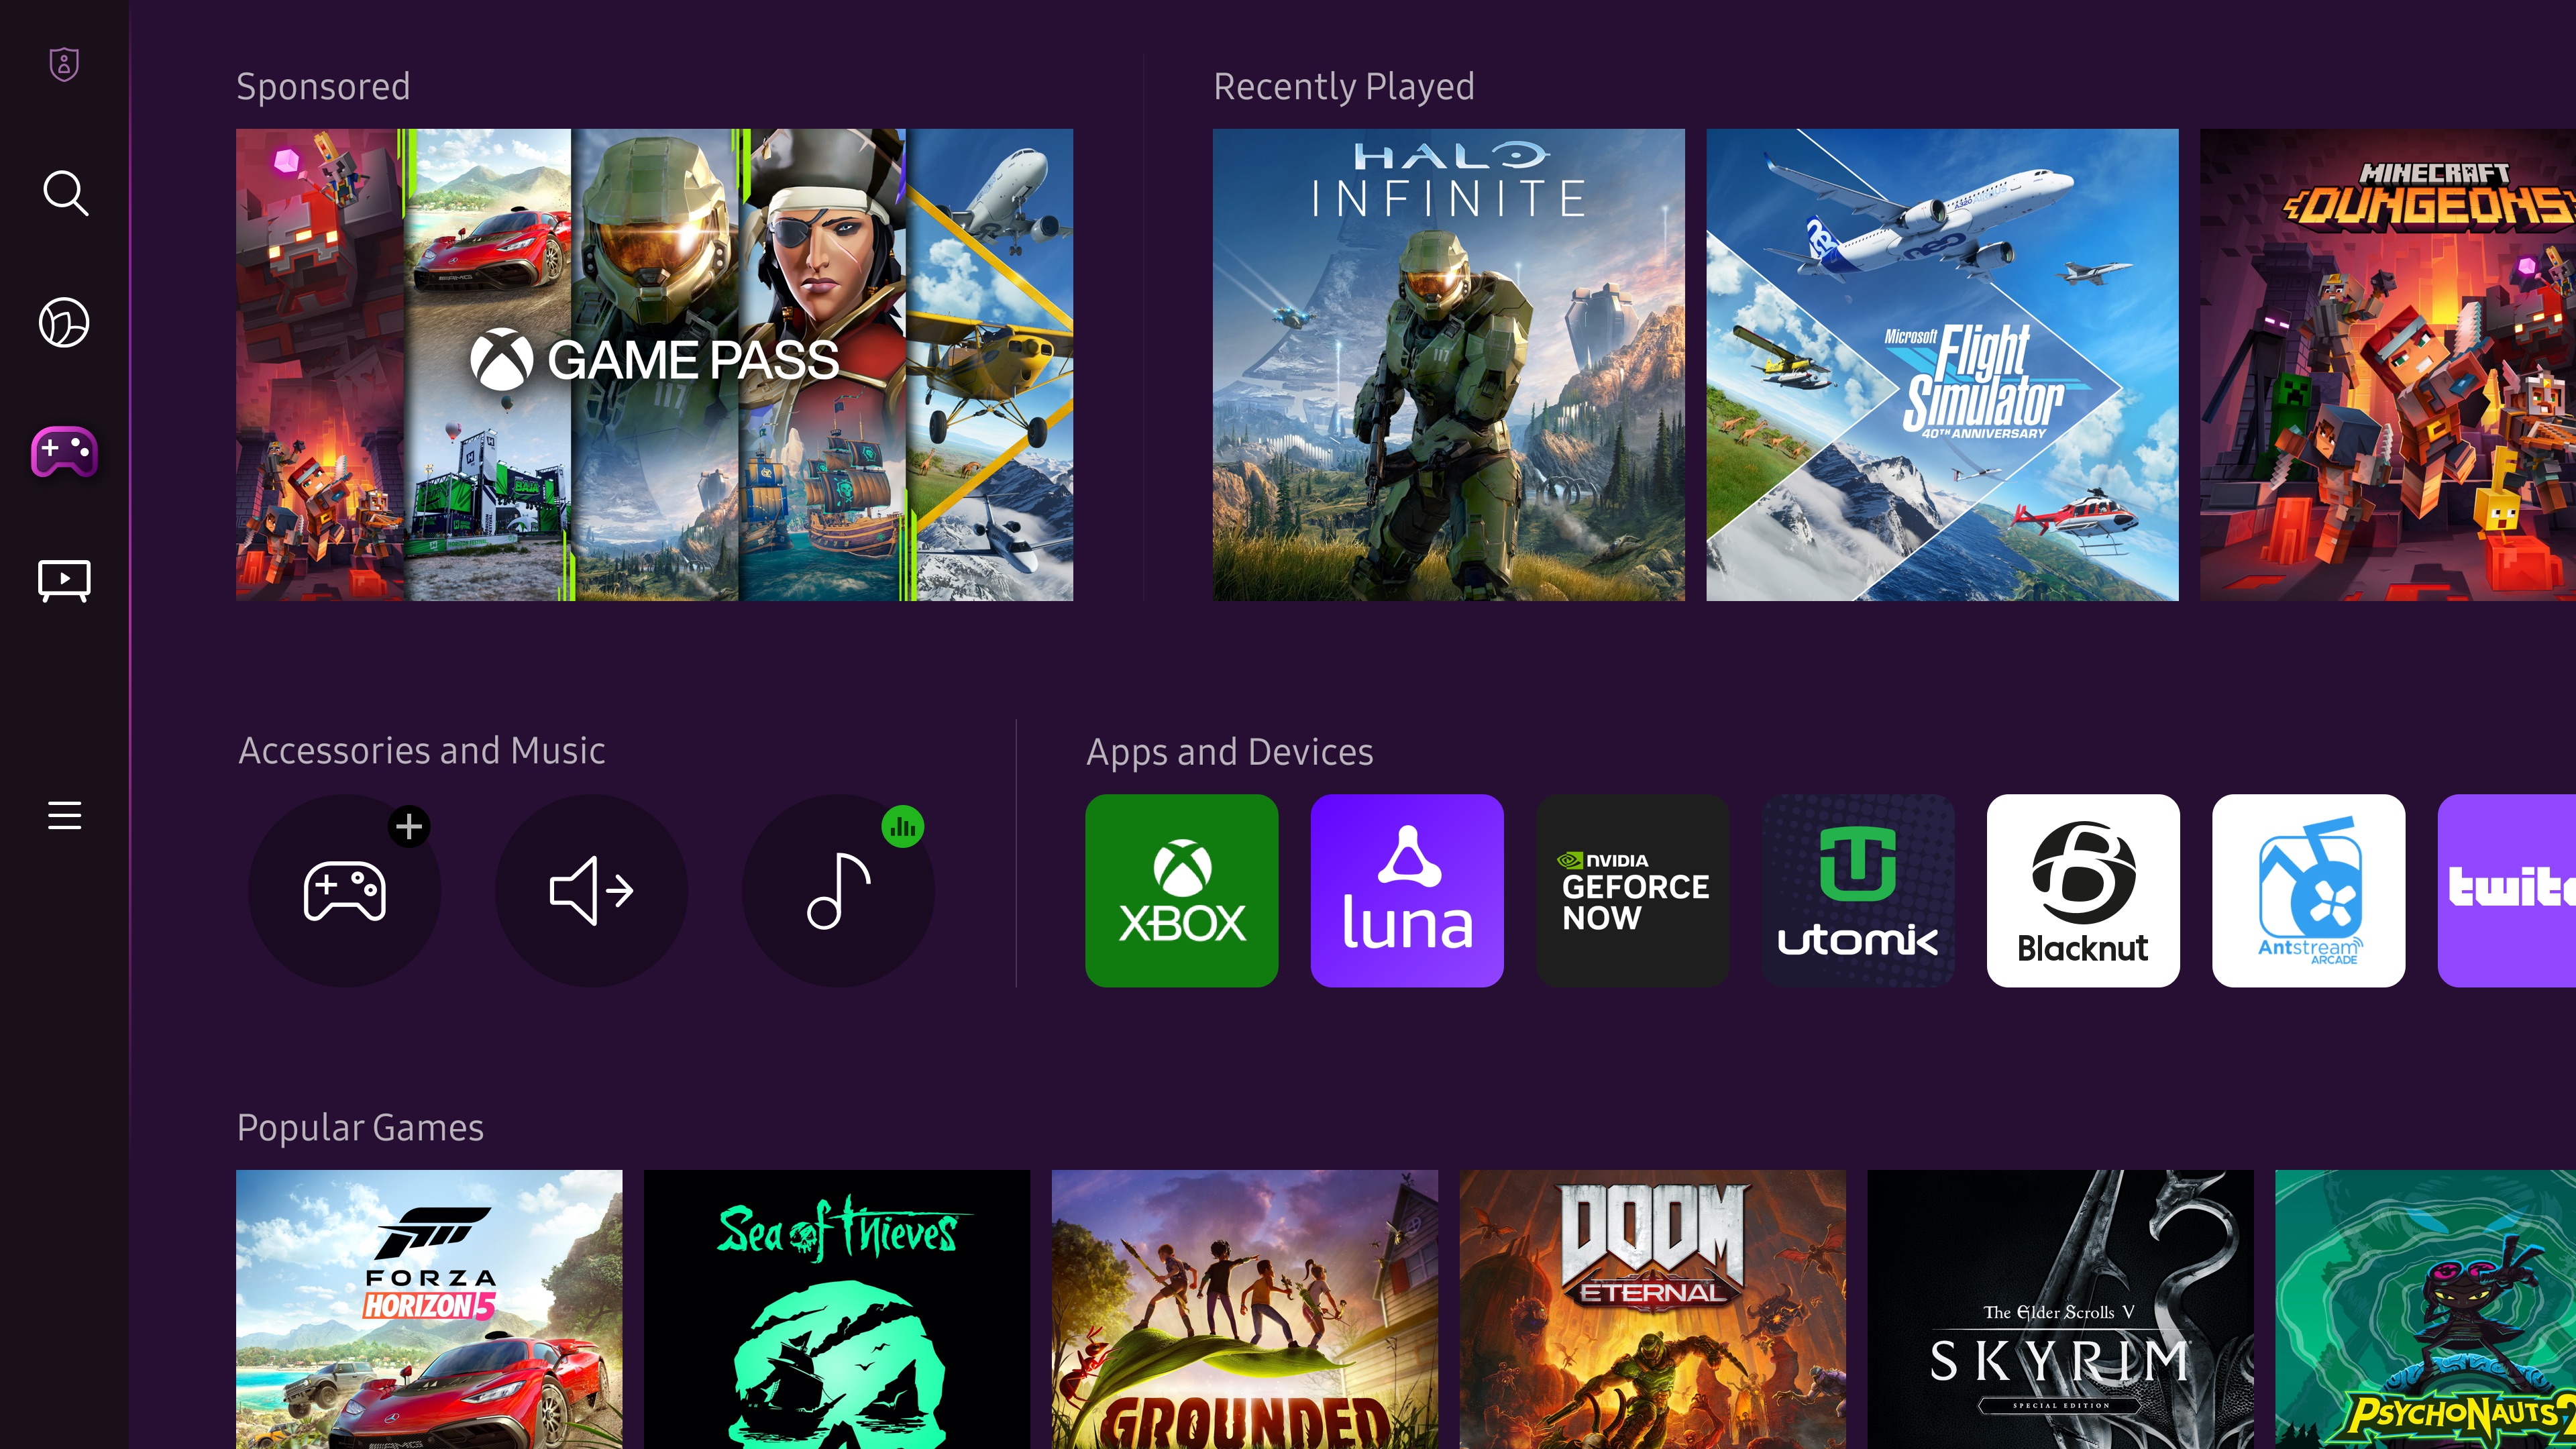 ซัมซุง ร่วมกับสองพันธมิตรคลาวน์เกมมิ่งระดับโลก Antstream Arcade และ Blacknut  เพิ่มช่องทางใหม่มอบประสบการณ์เพลิดเพลินกับเกมสตรีมมิ่งมากยิ่งขึ้นบนซัมซุงสมาร์ททีวีในปี 2023   นอกเหนือจาก Xbox, NVIDIA GeForce NOW และ Utomik 